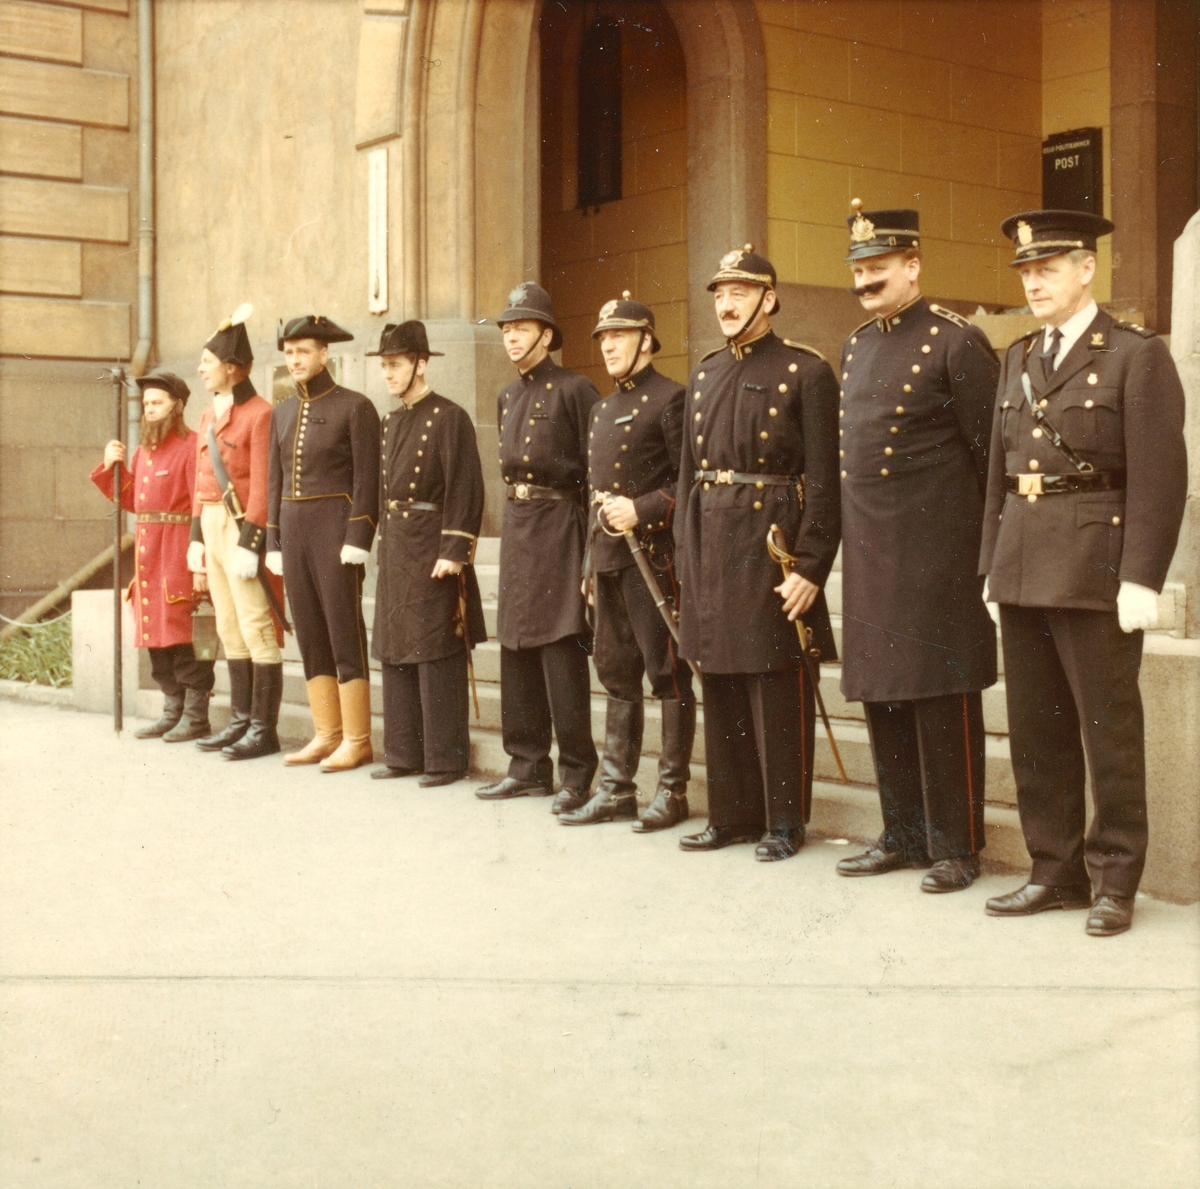 Ni menn utkledd i historiske politiuniformer fra Oslo, fra 1700-tallets vekteruniform til politiuniform modell 1964. Mennene er oppstilt utenfor hovedinngangen til Oslo hovedpolitistasjon i Møllergata 19.